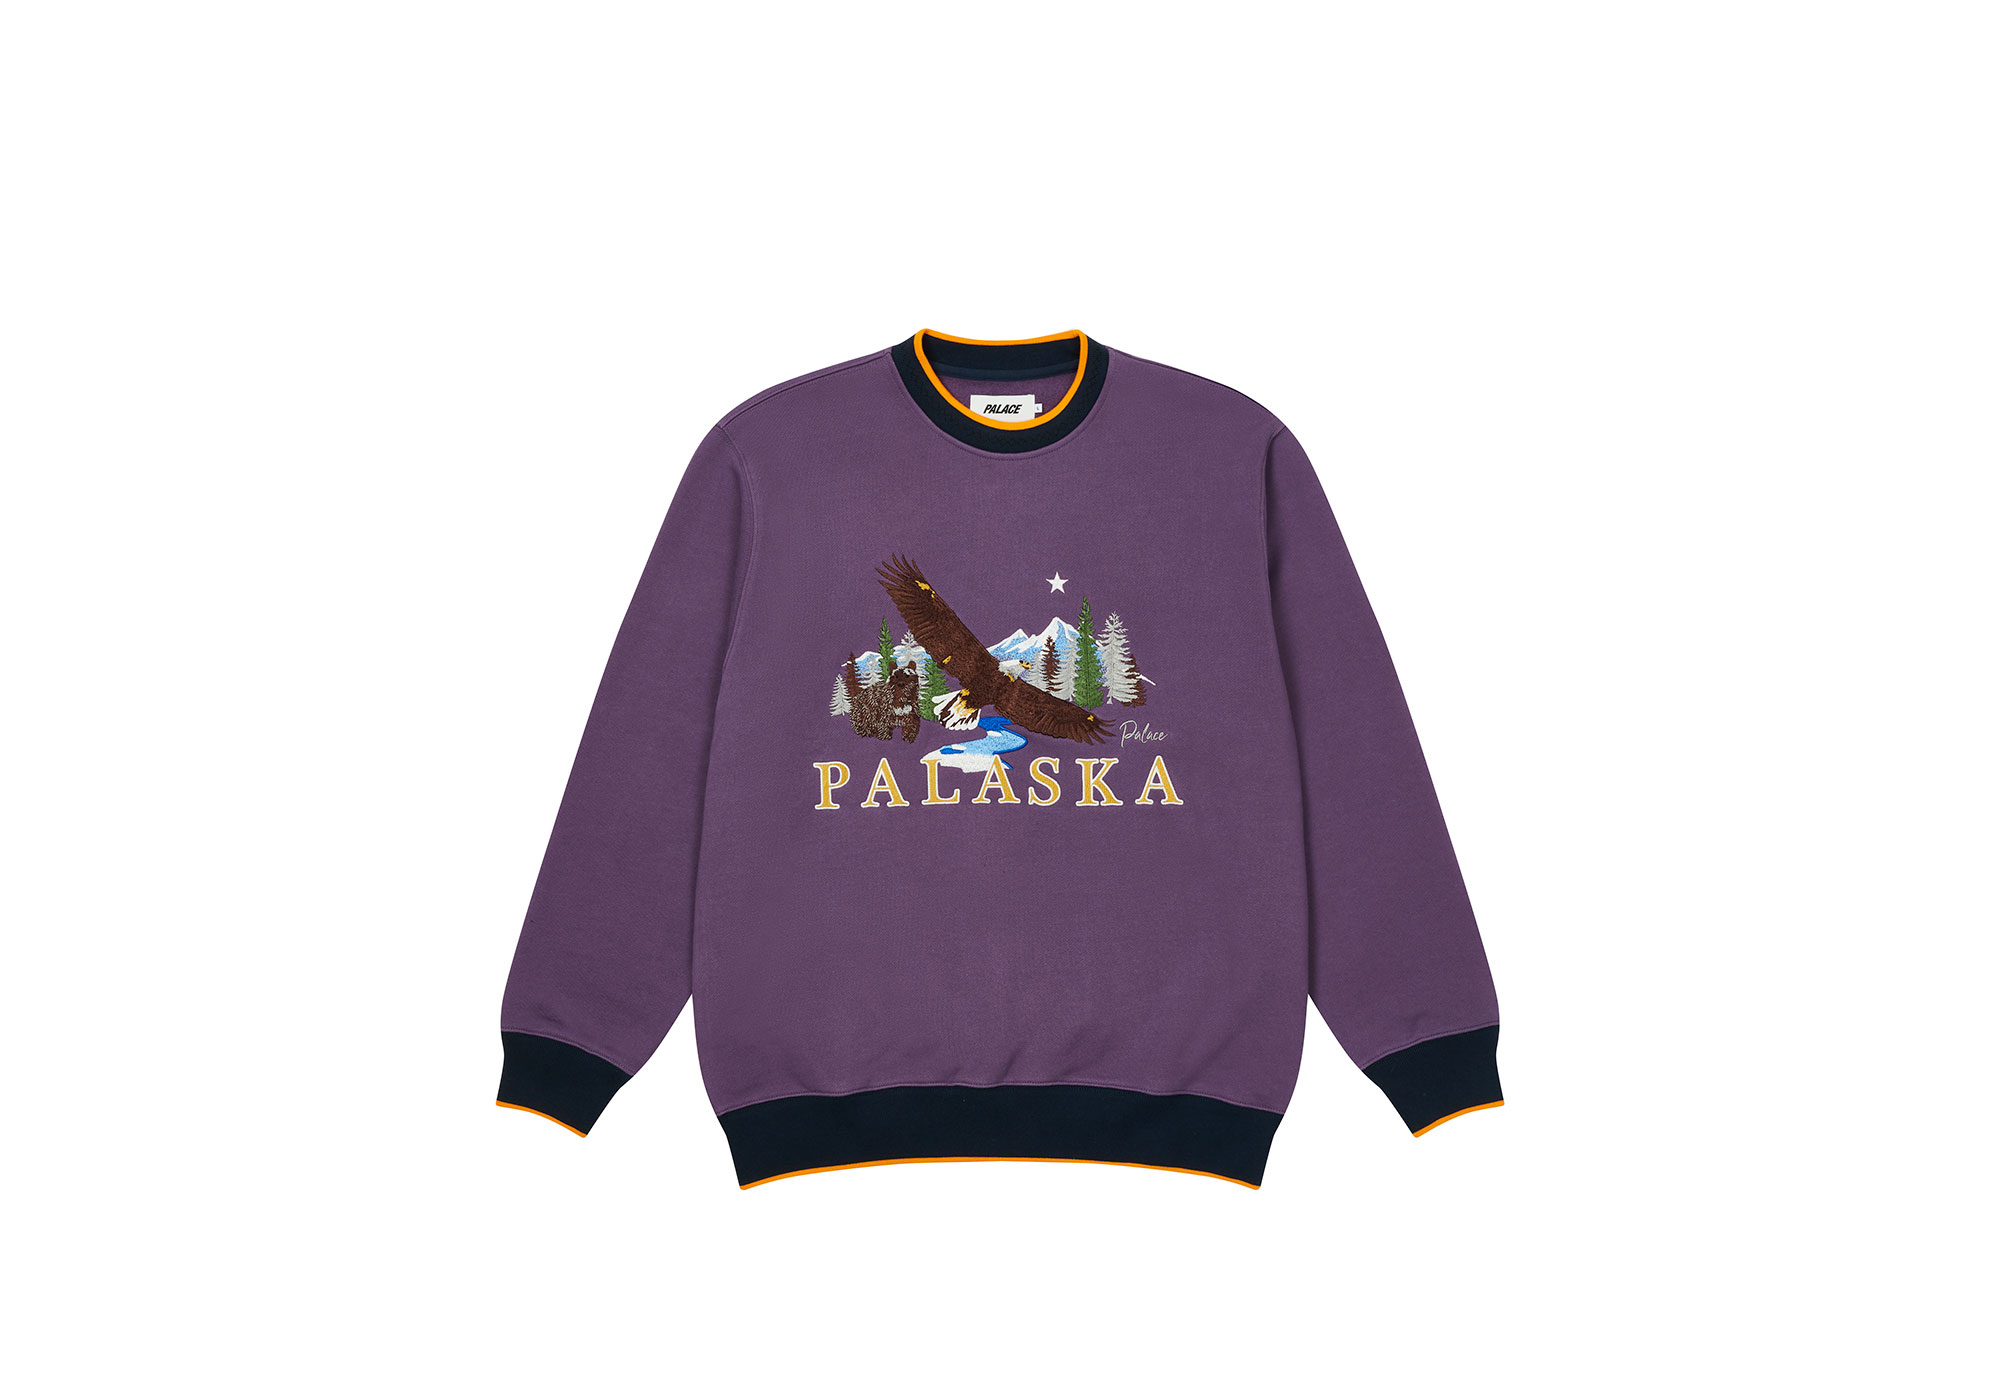 Palace Palaska Dye T-shirt Purple